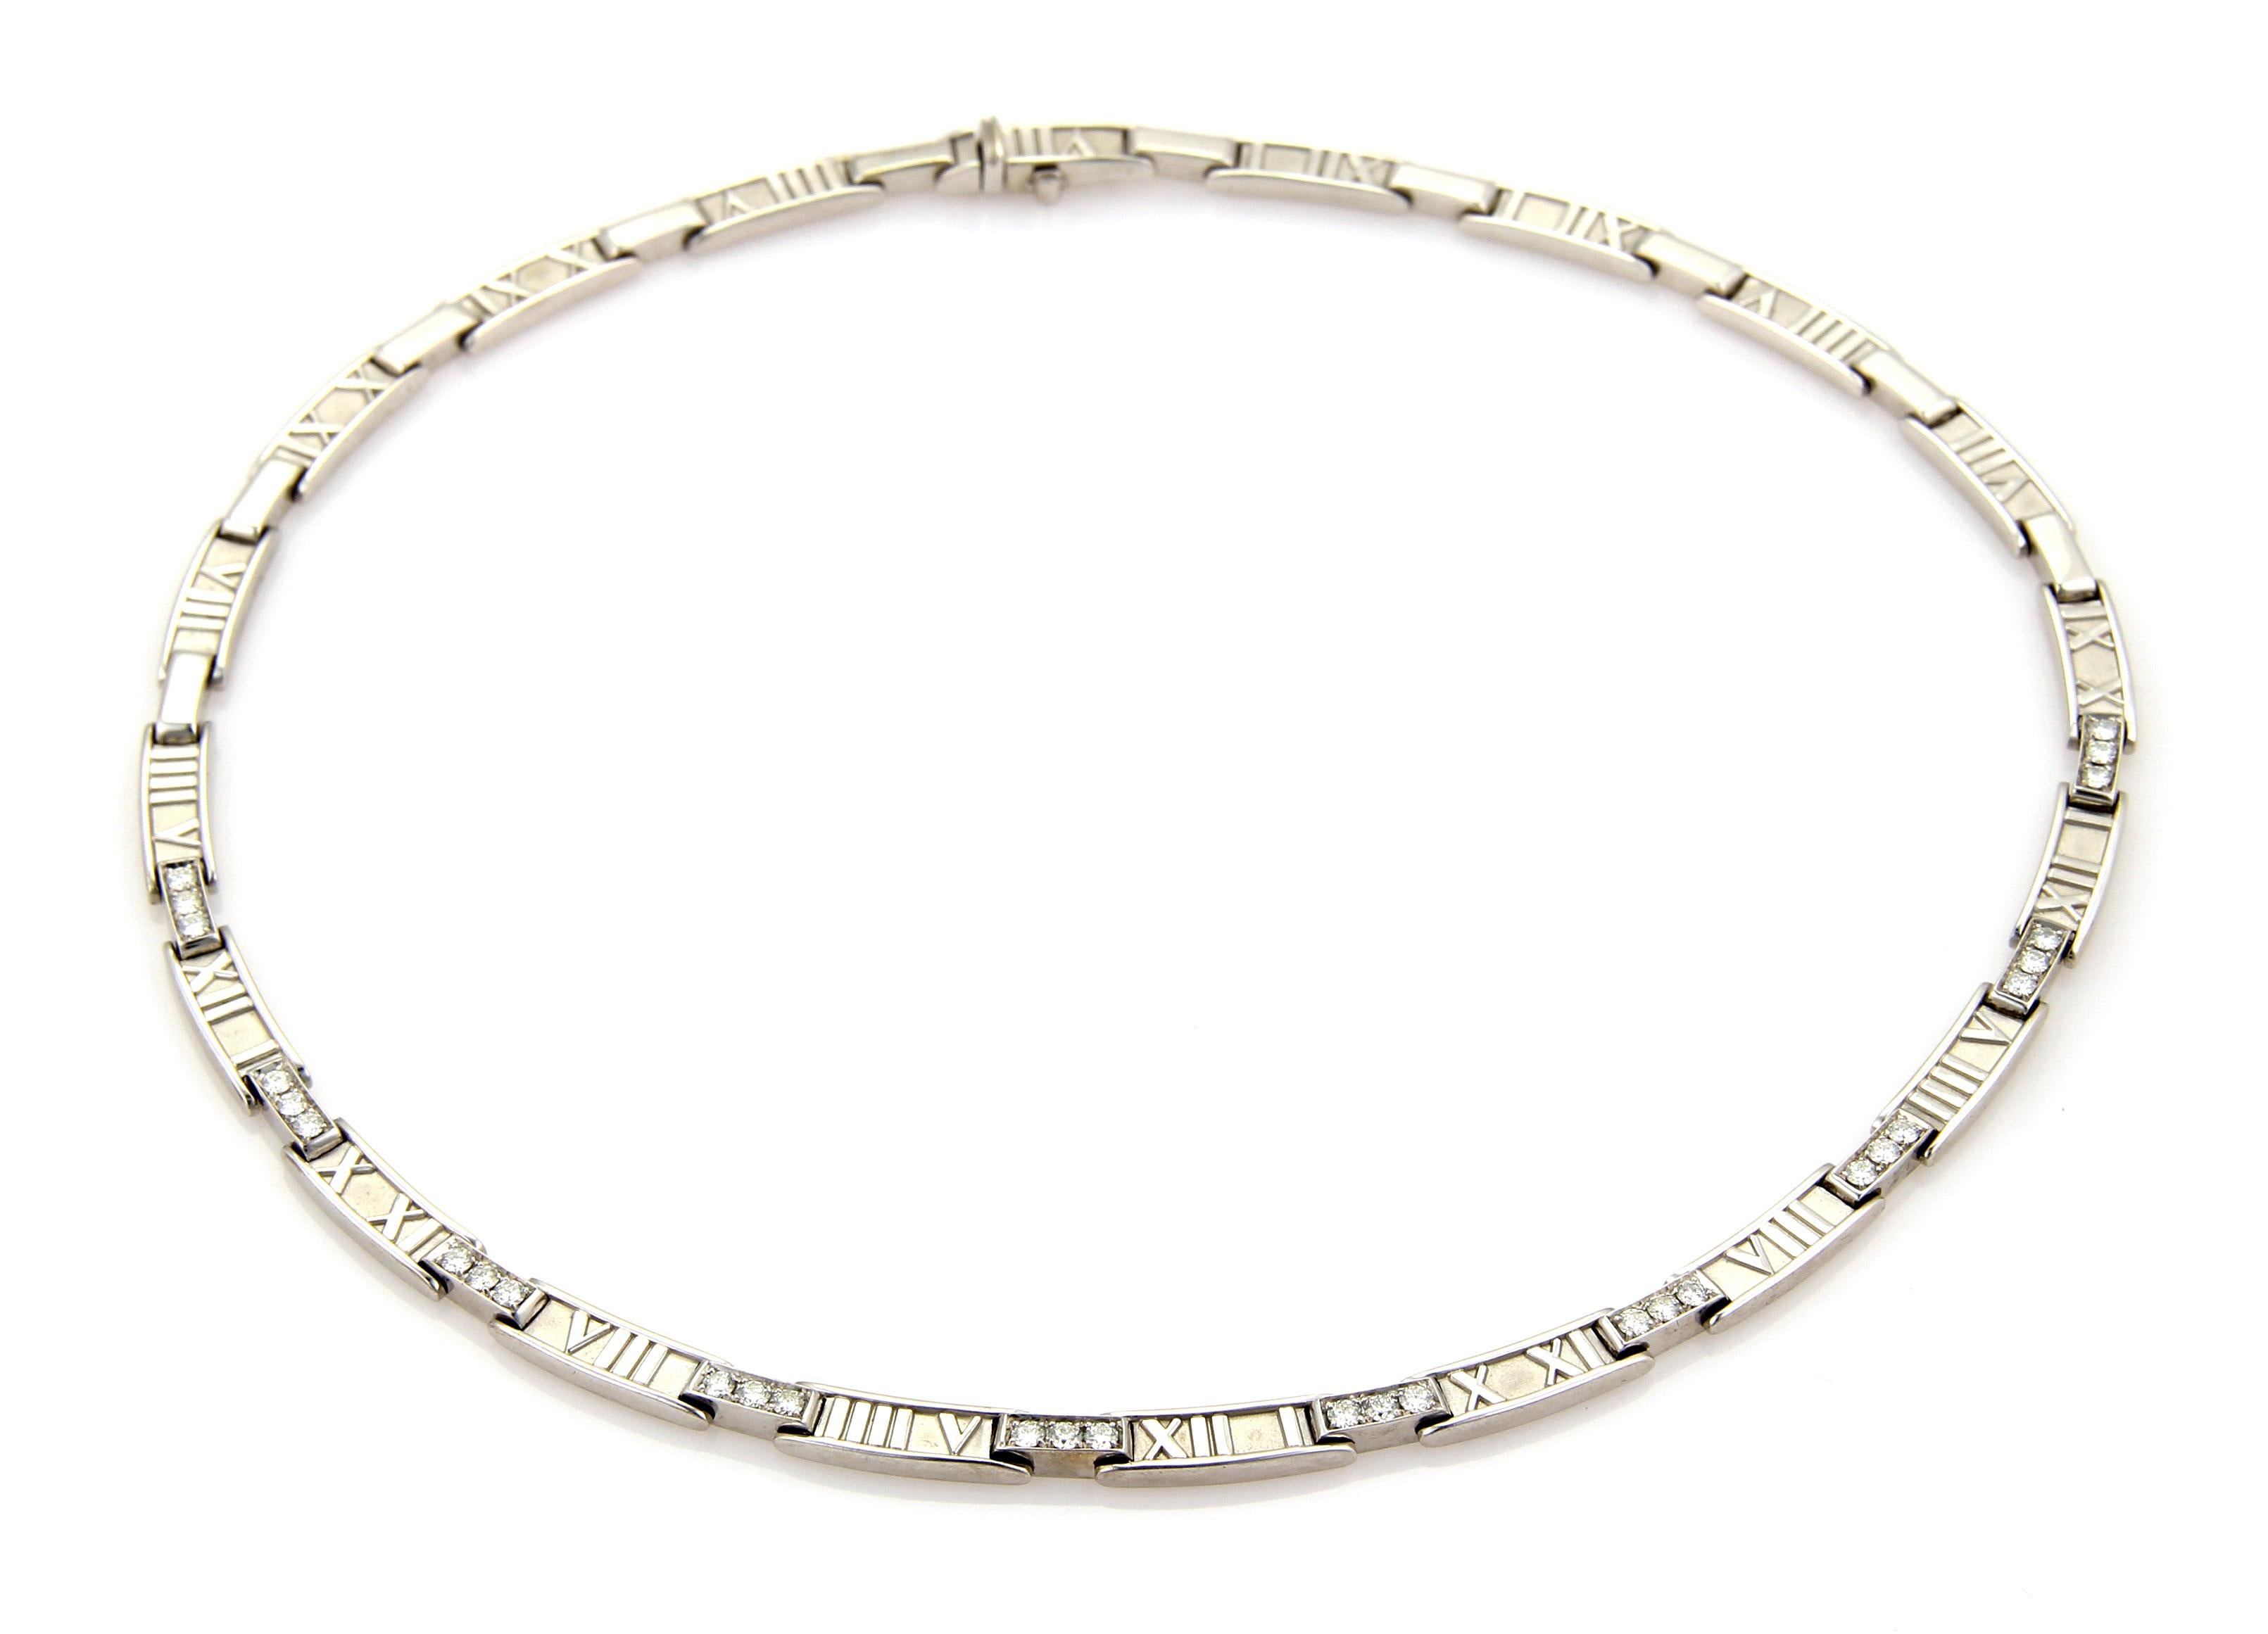 Voici un magnifique collier en diamants de Tiffany & S. de la collection ATLAS.  Il est réalisé en or blanc massif 18k avec une finition polie et texturée. La moitié avant du collier est ornée de diamants sertis dans un maillon en forme de barre,